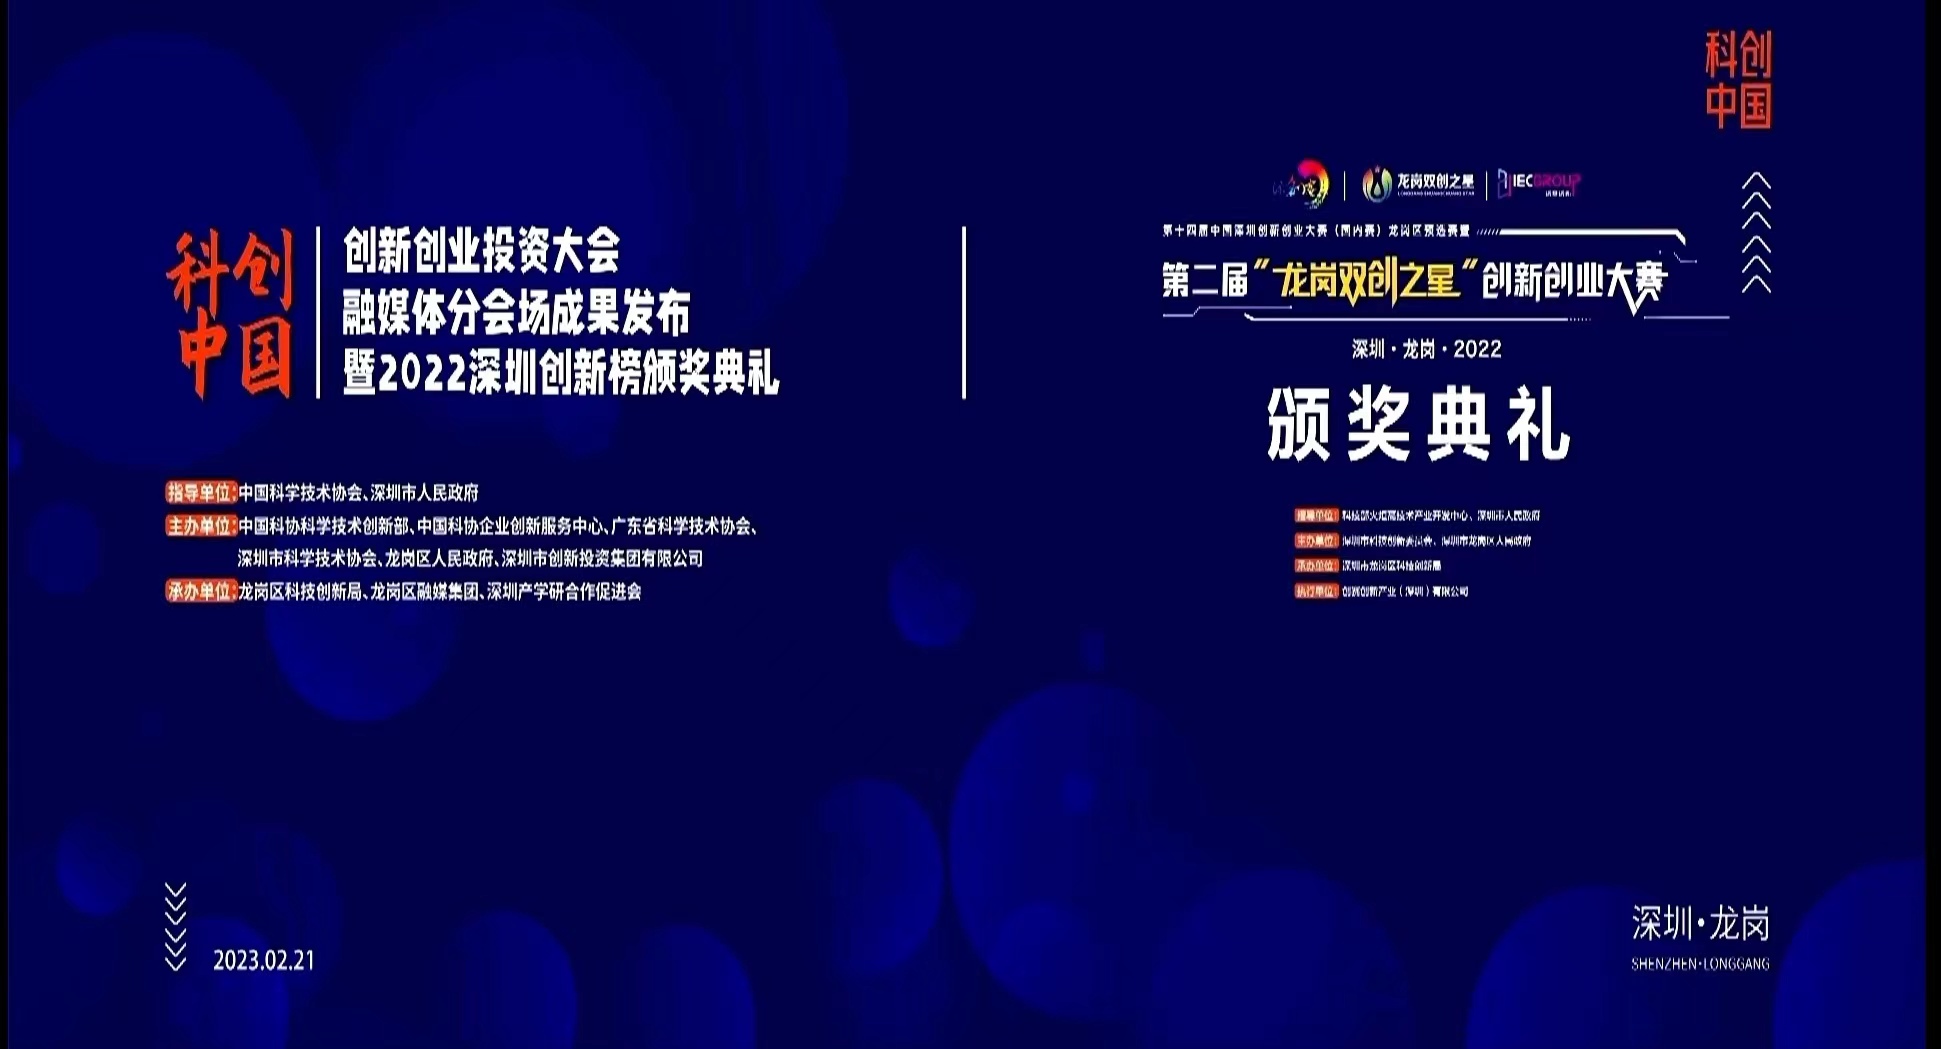 荣耀∣ 易视智瞳创始人兼CEO黄卜夫博士荣获“2022年度深圳创新创业风云人物”